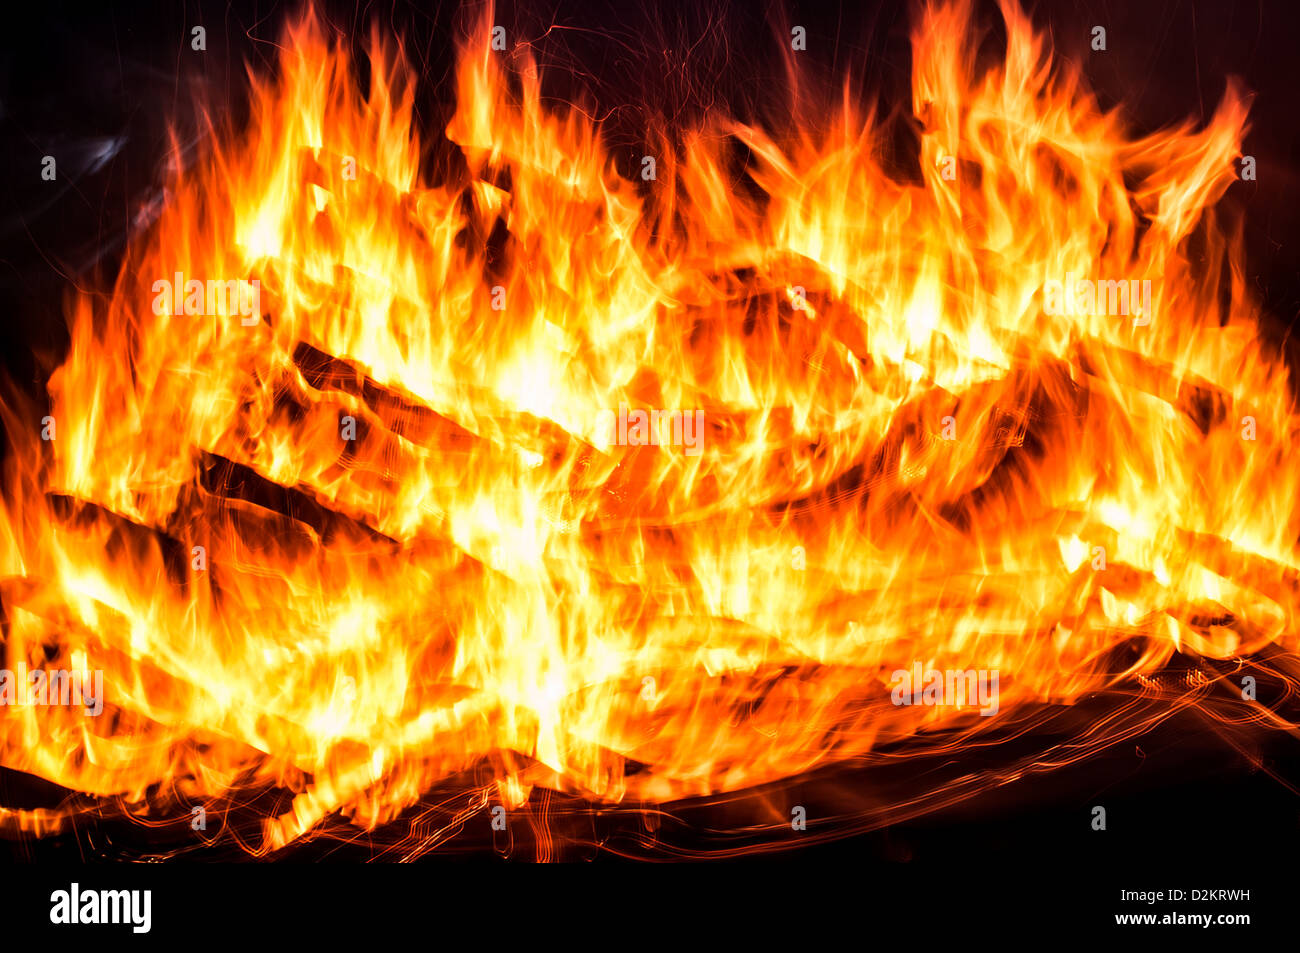 Fire photo sur un fond noir Banque D'Images